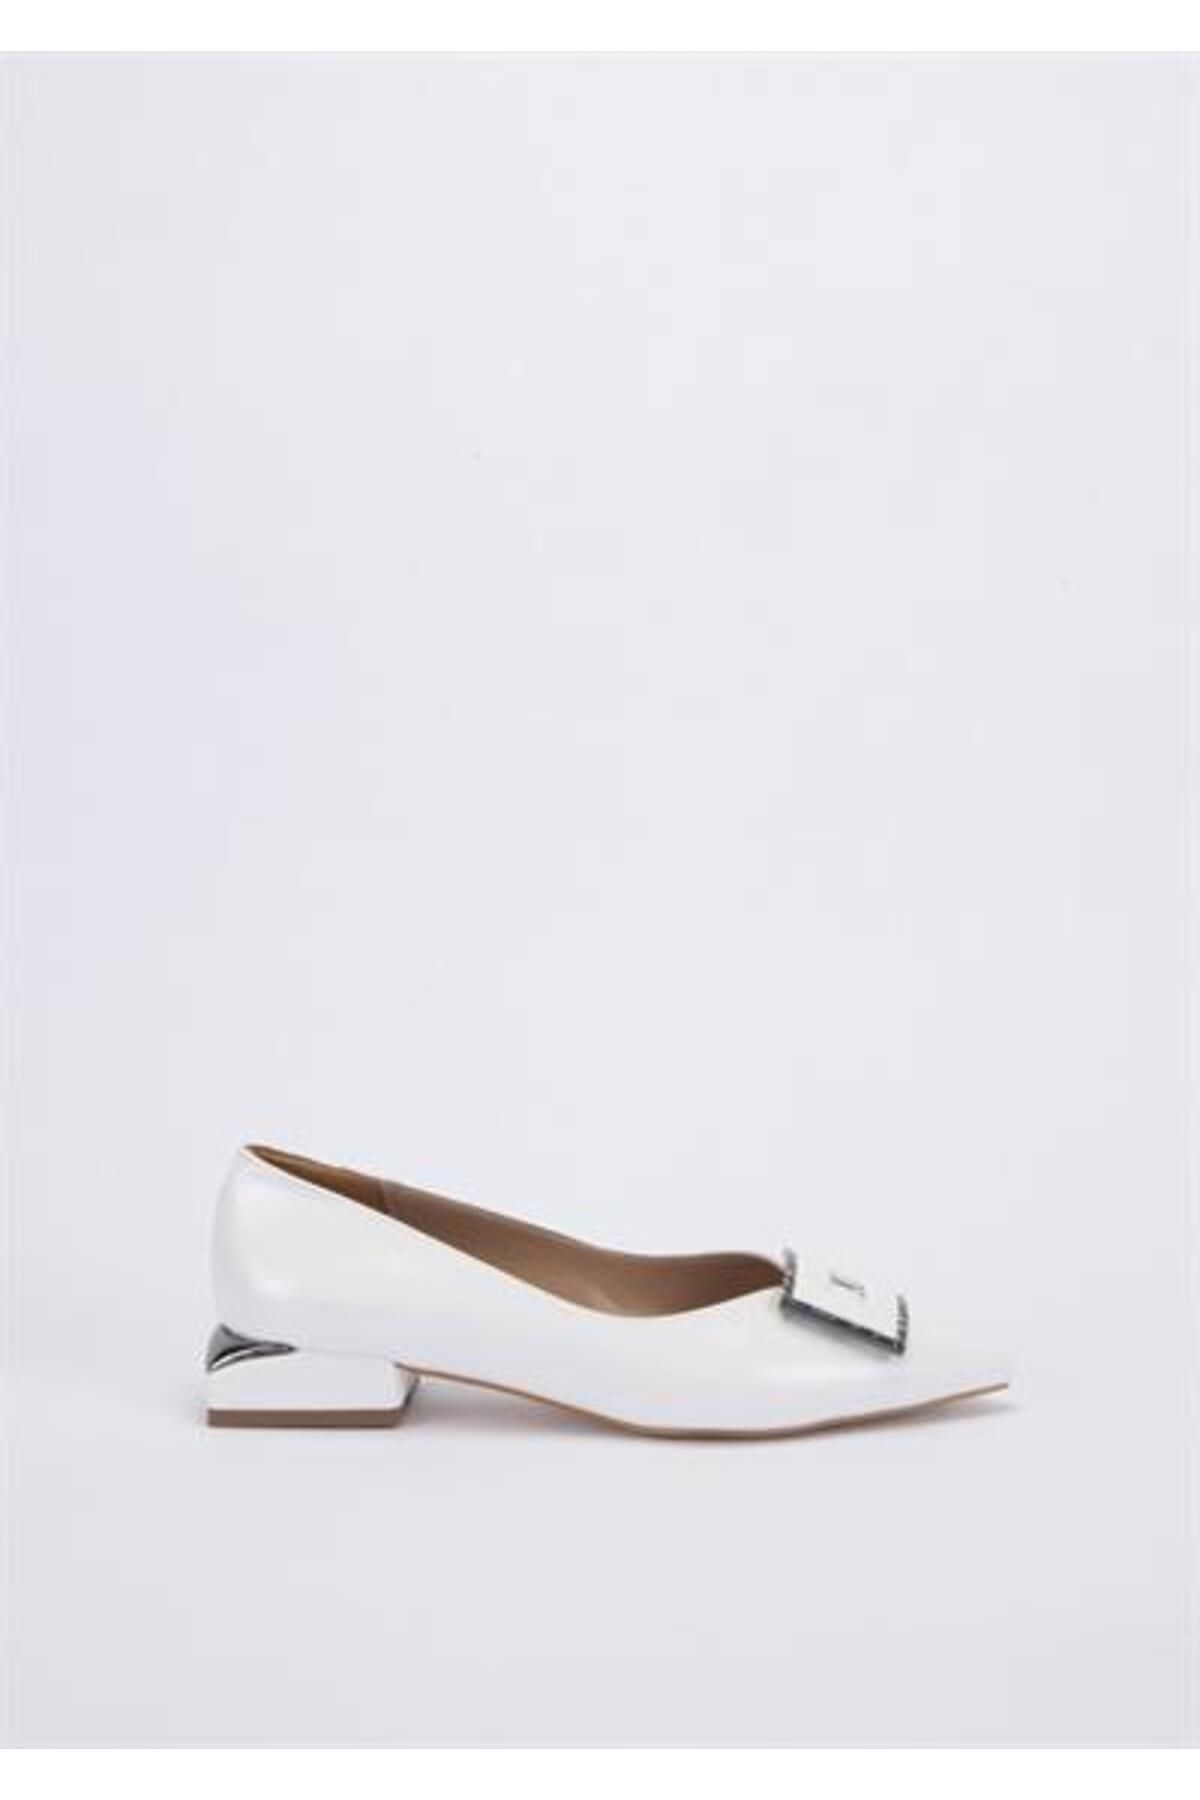 Yeşil Kundura T01 074-2267 Kadın Beyaz Ayakkabı